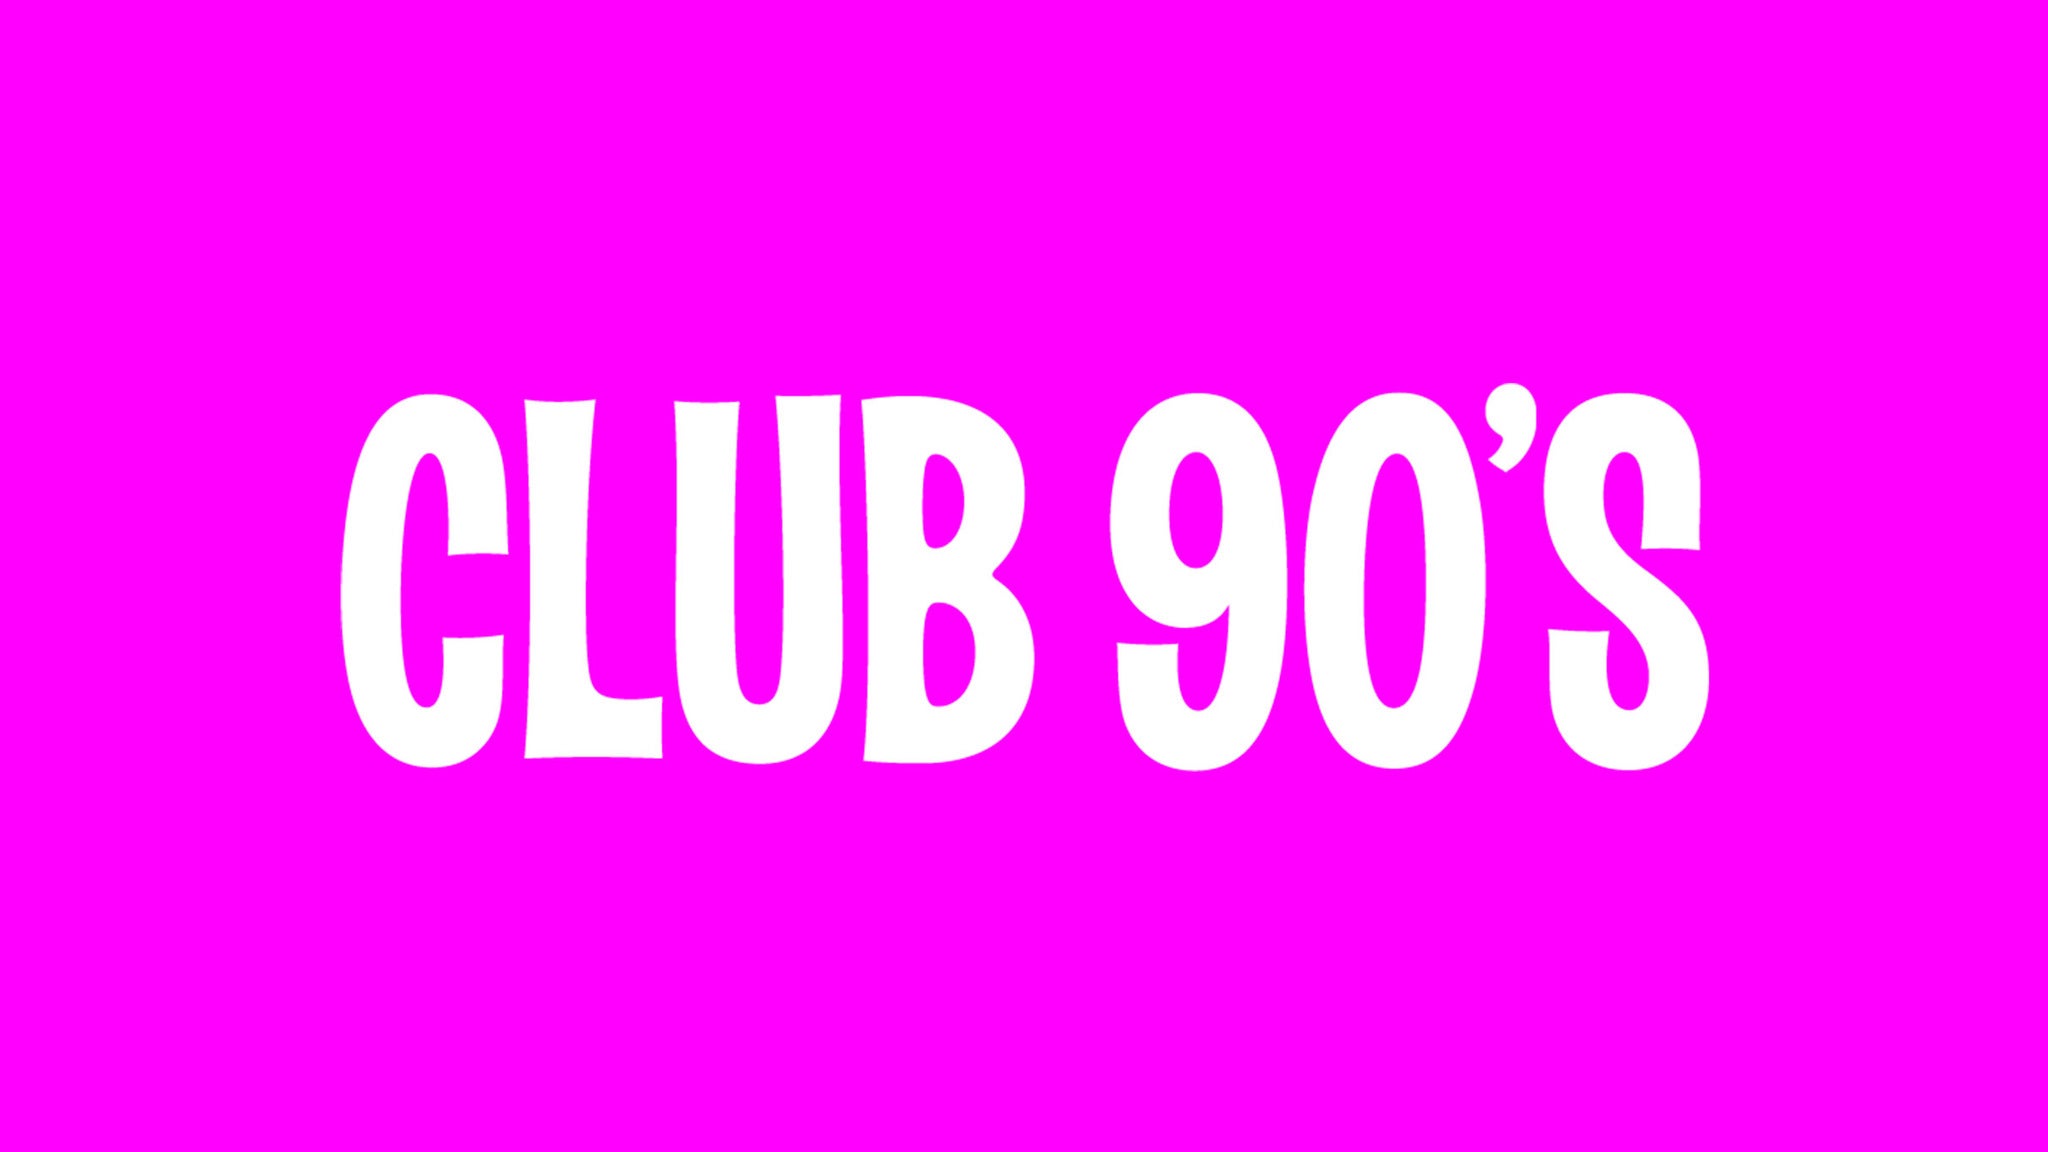 Club 90's Rebelde Night at The Van Buren